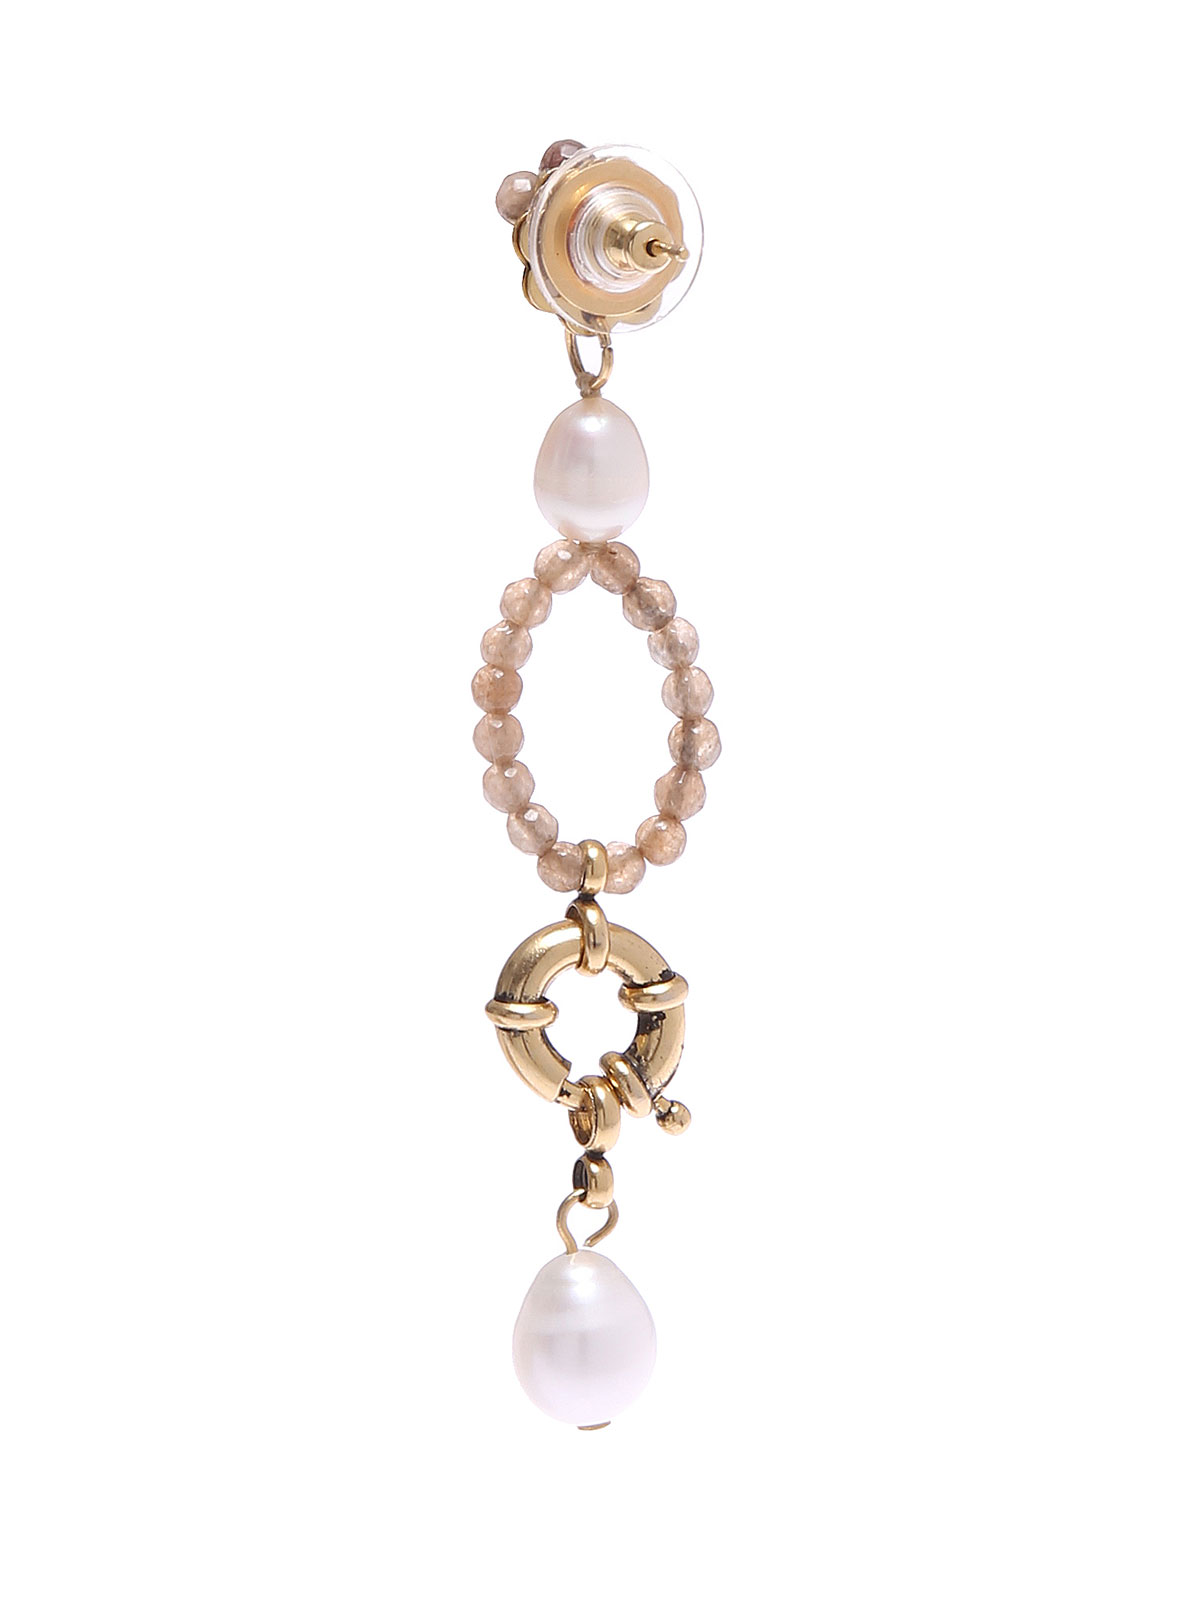 Jade earrings with freshwater pearls